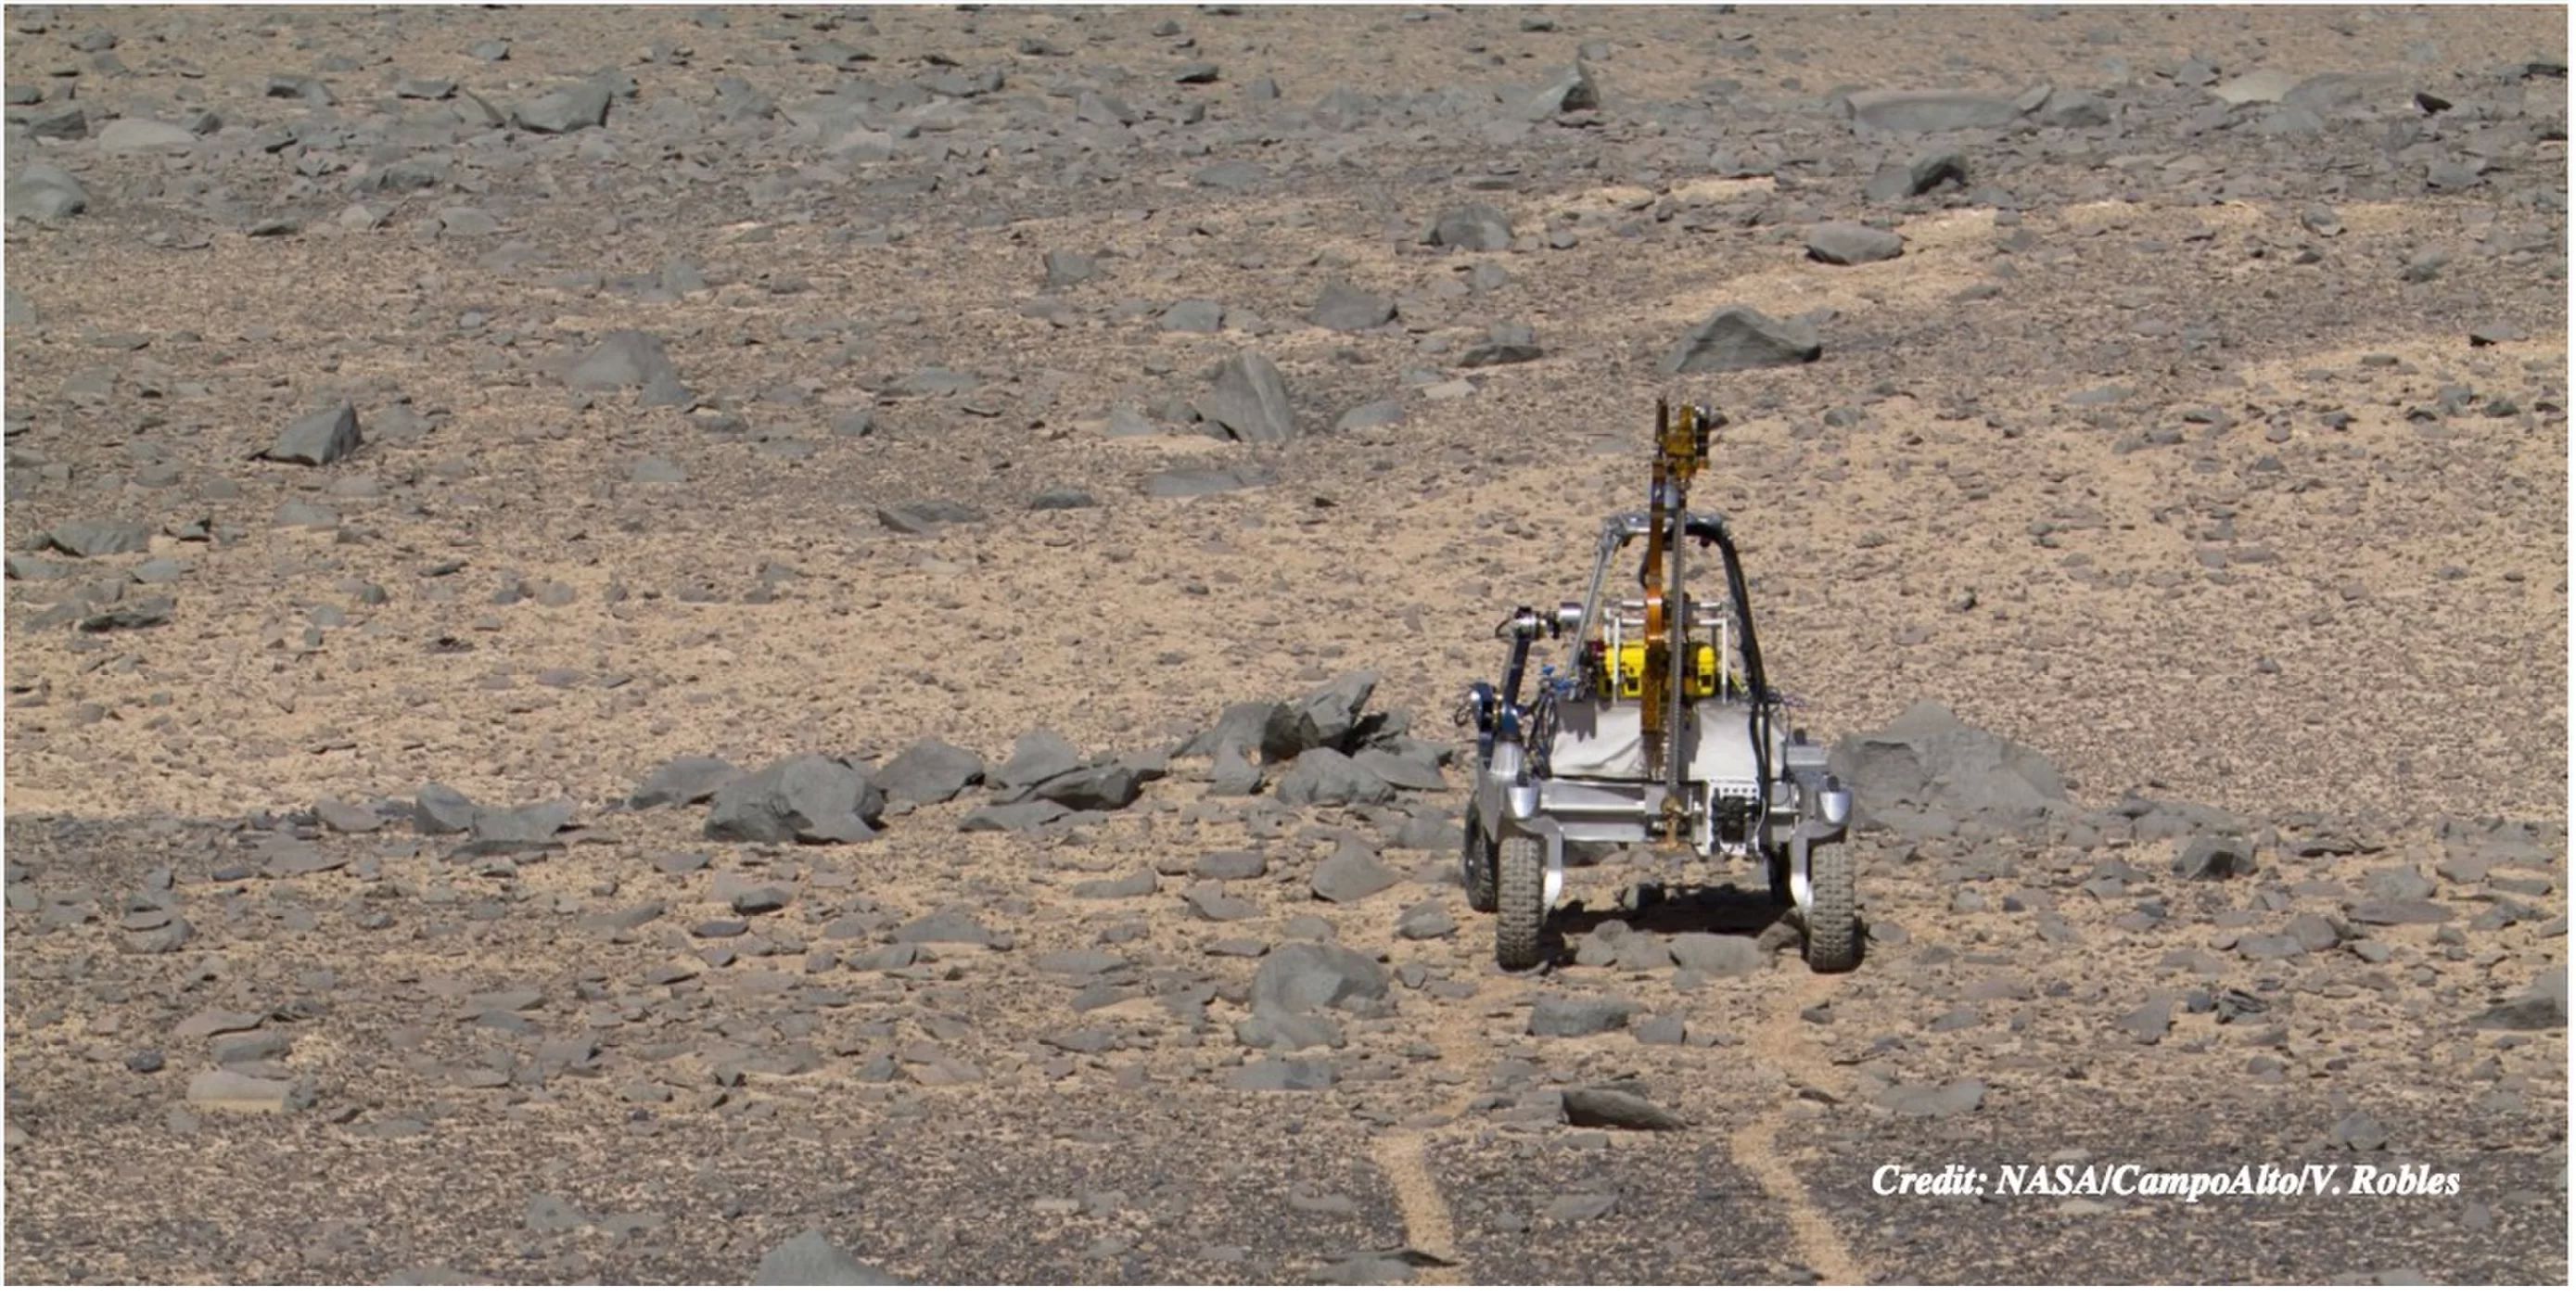 НАСА испытывает новый марсианский ровер в чилийской пустыне